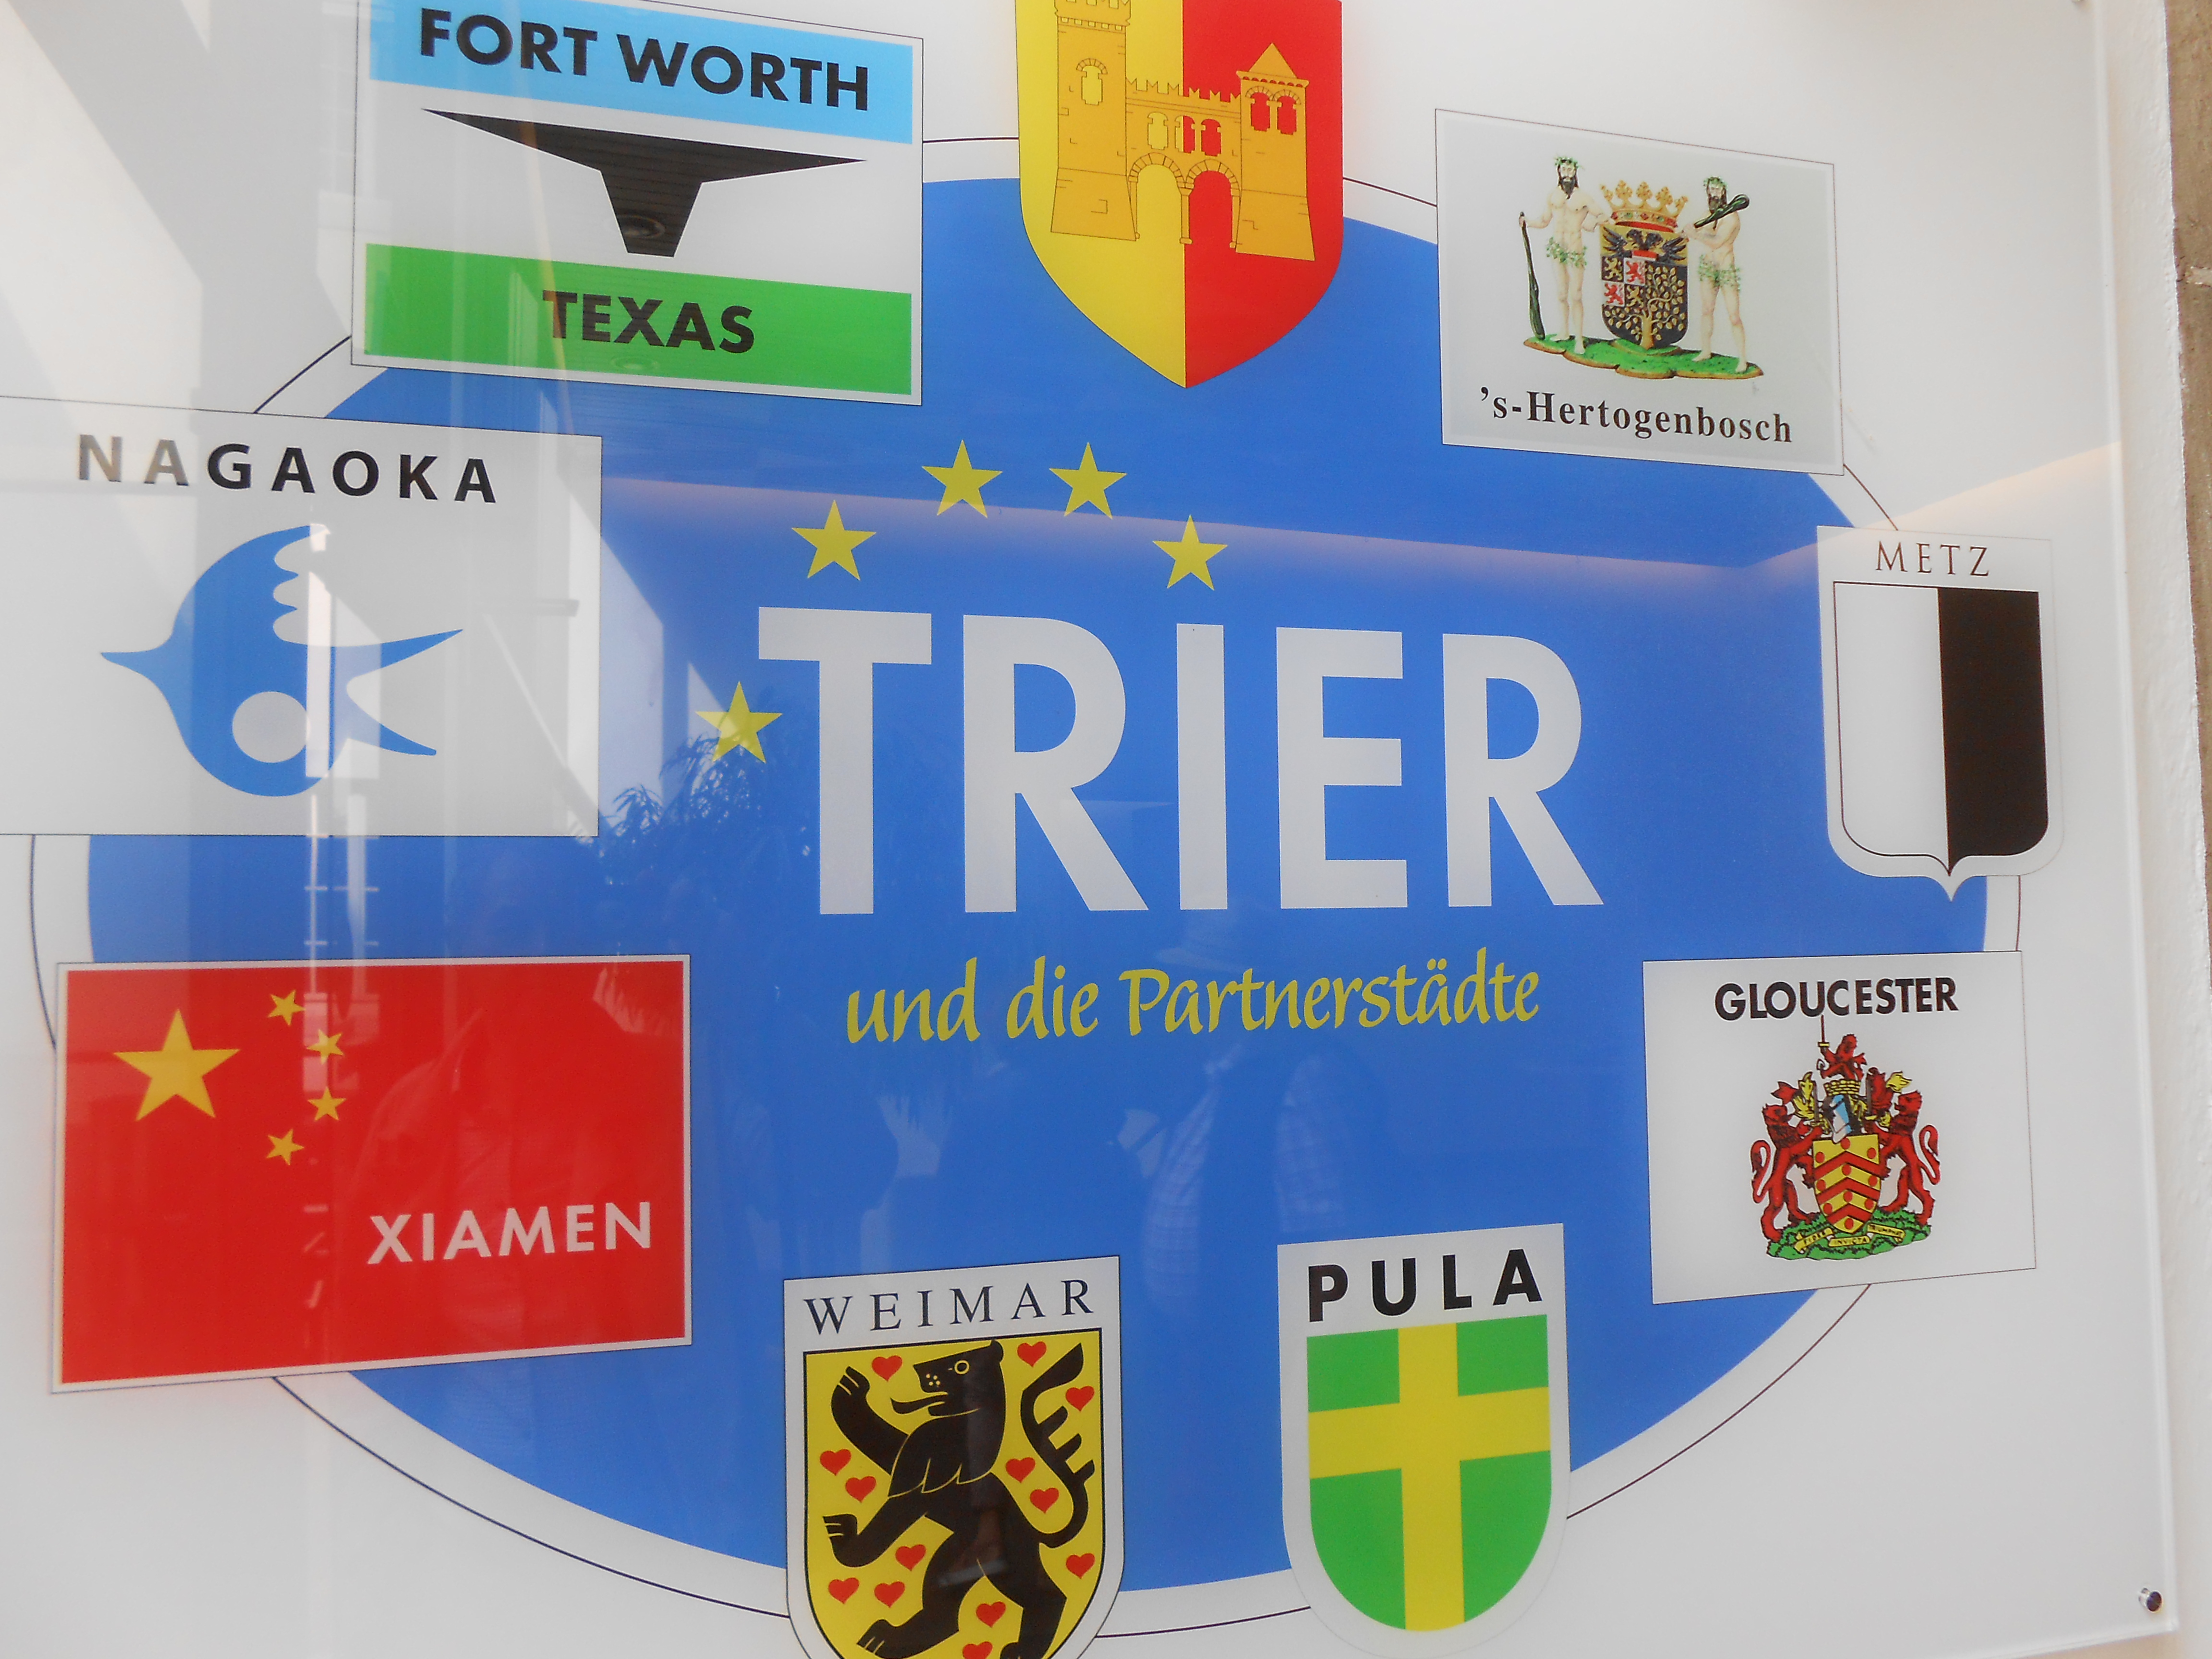 Wandschaubild mit den Logos der Trierer Partnerstädte